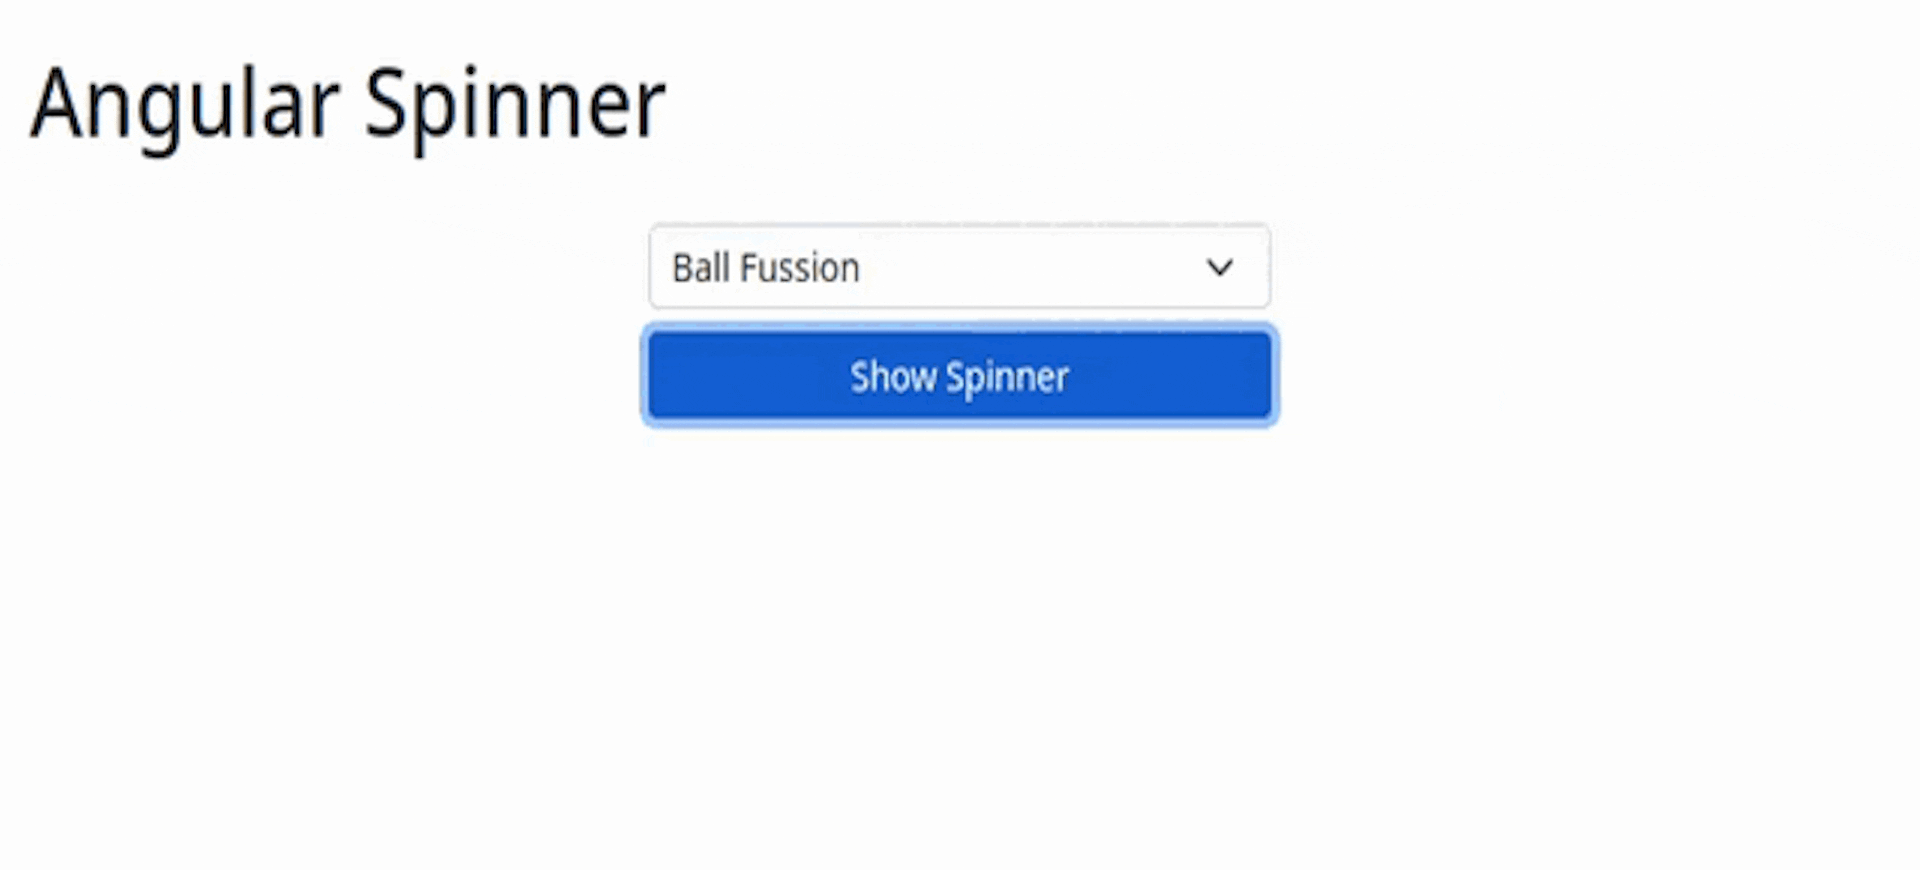 Angular Spinner